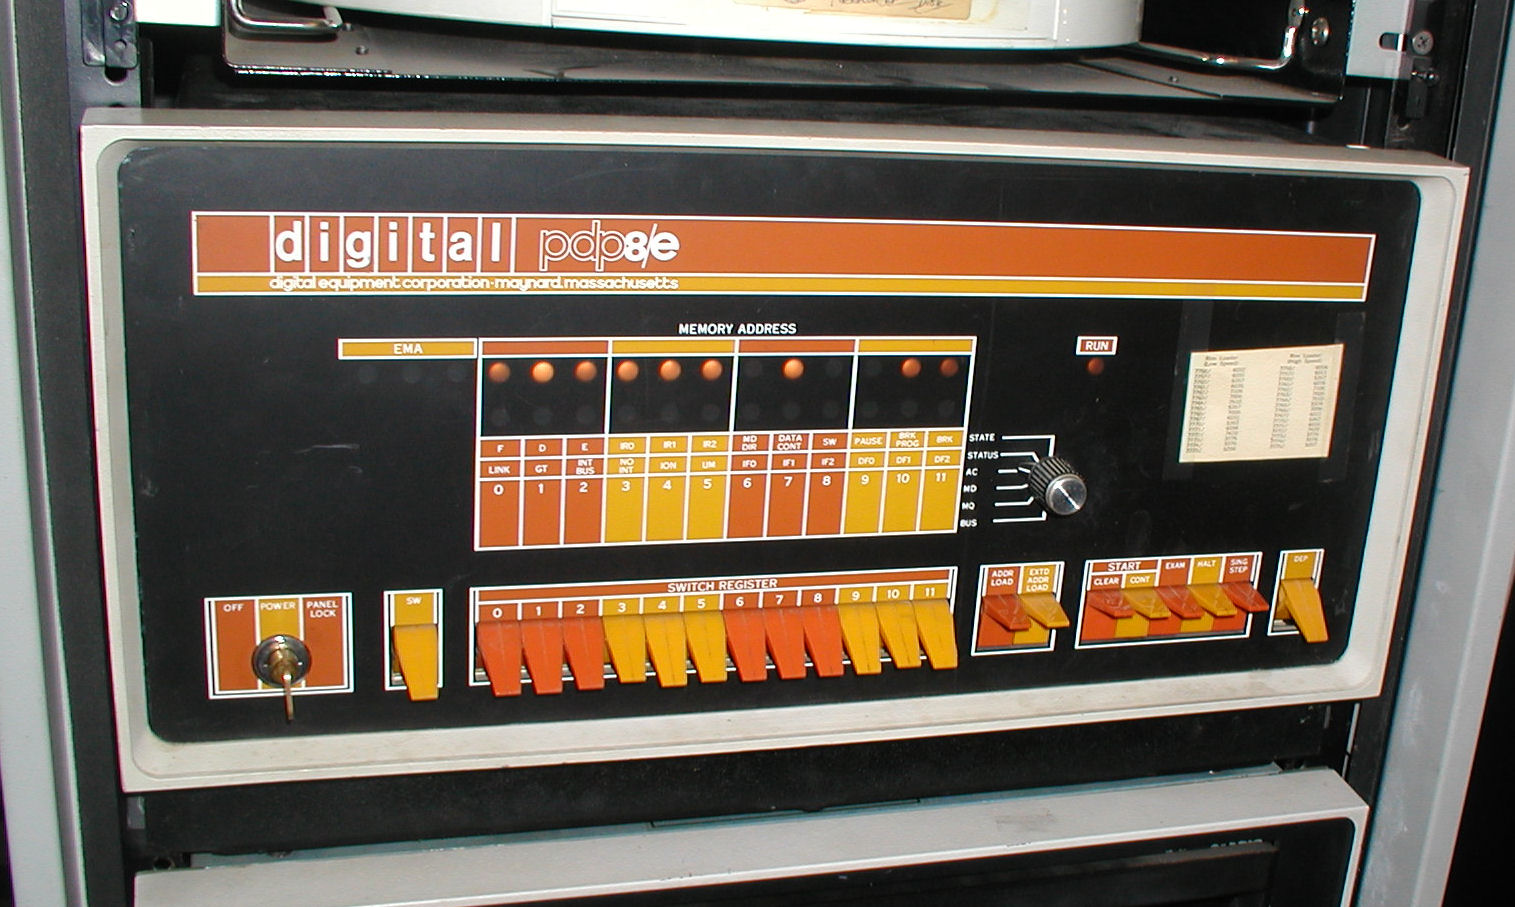 PDP8e computer